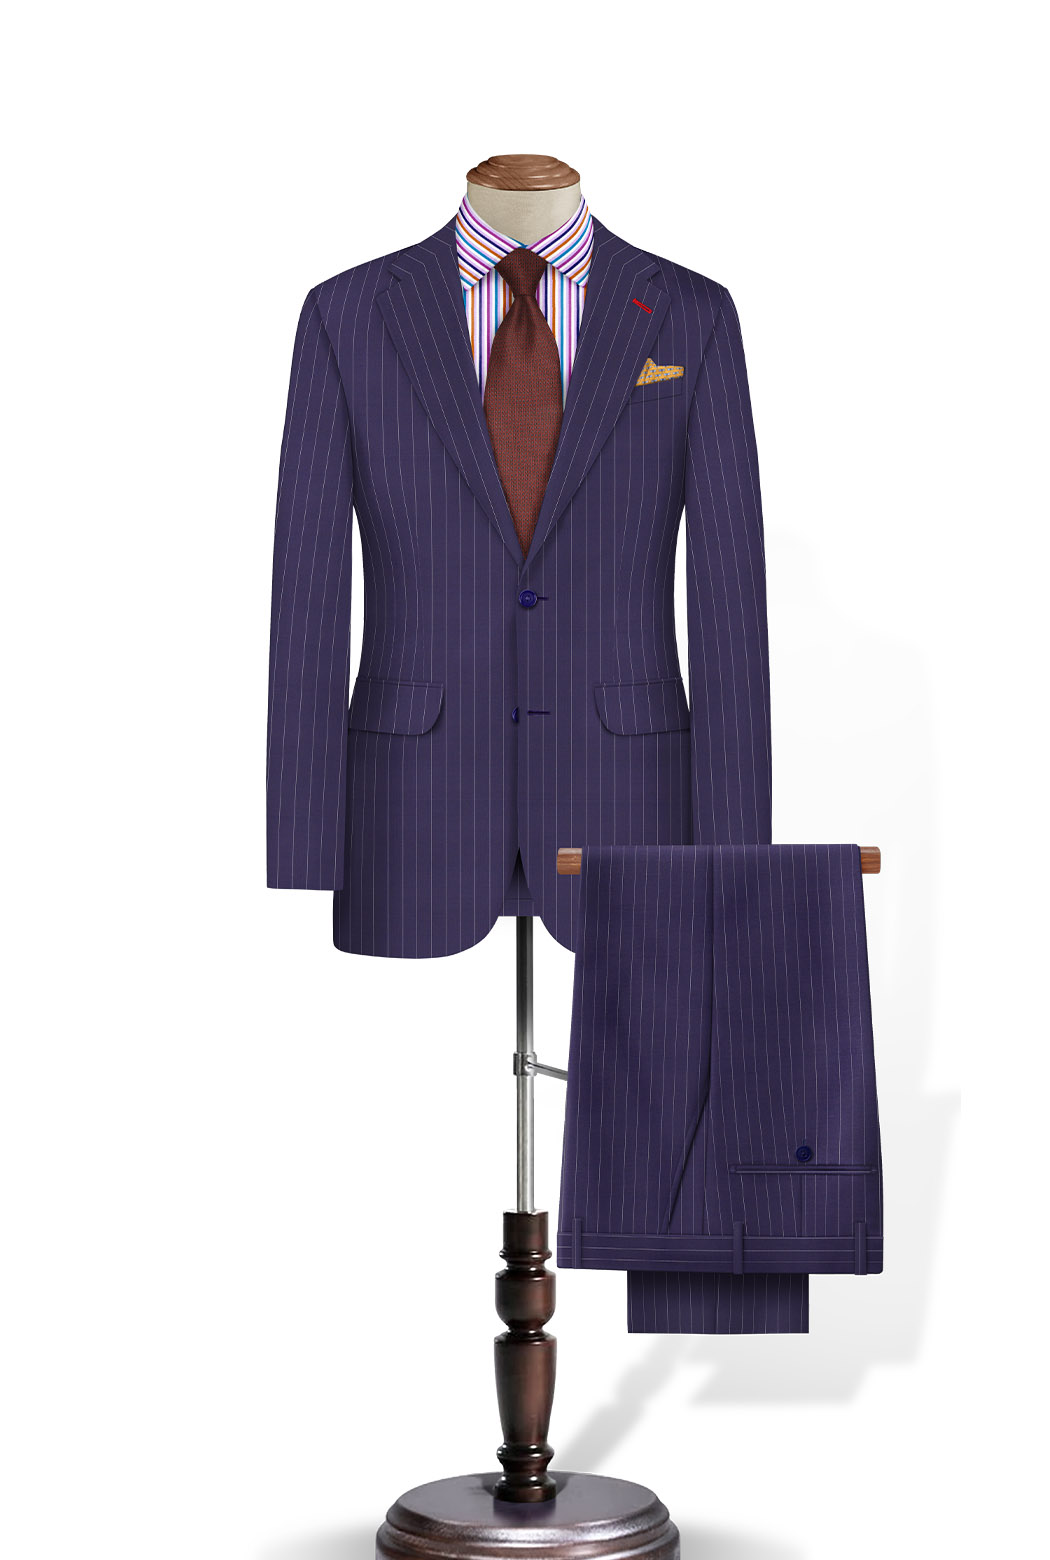 Plaid Suit Simple | He Spoke Style